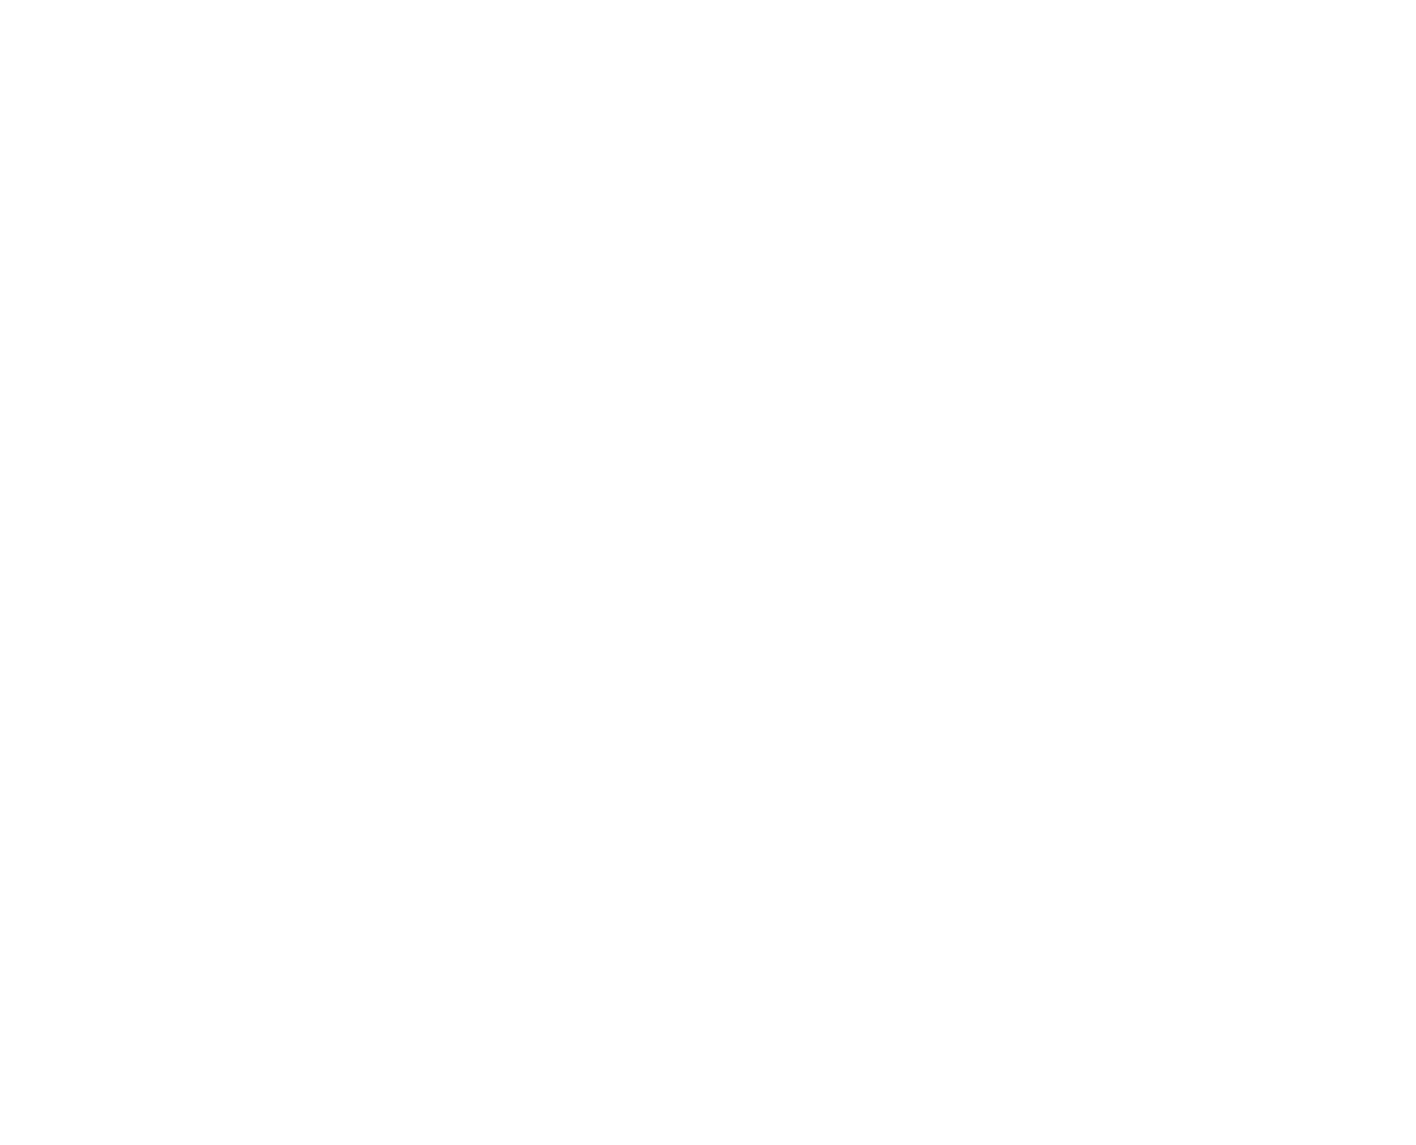 Go Forward!